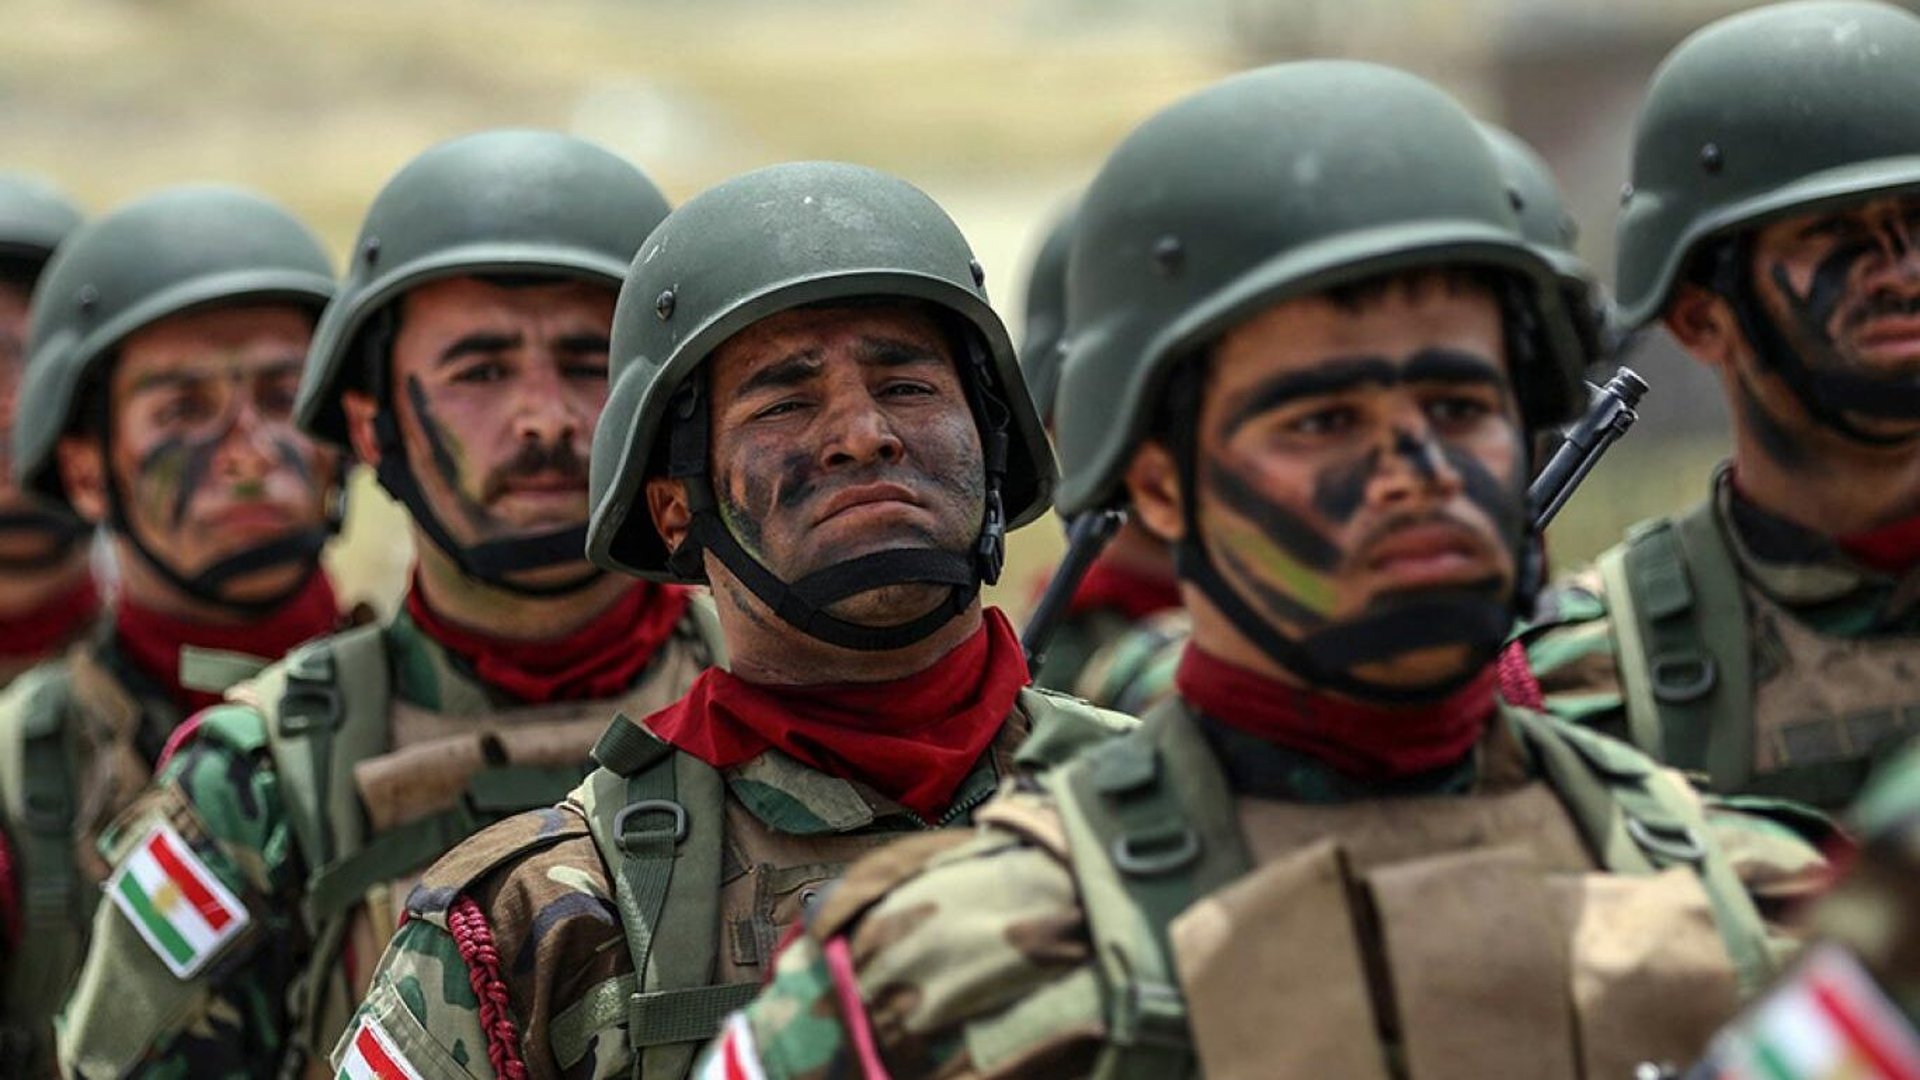 أوامر صارمة.. داخلية كردستان تمنع ظهور منتسبيها بالزي العسكري على مواقع التواصل